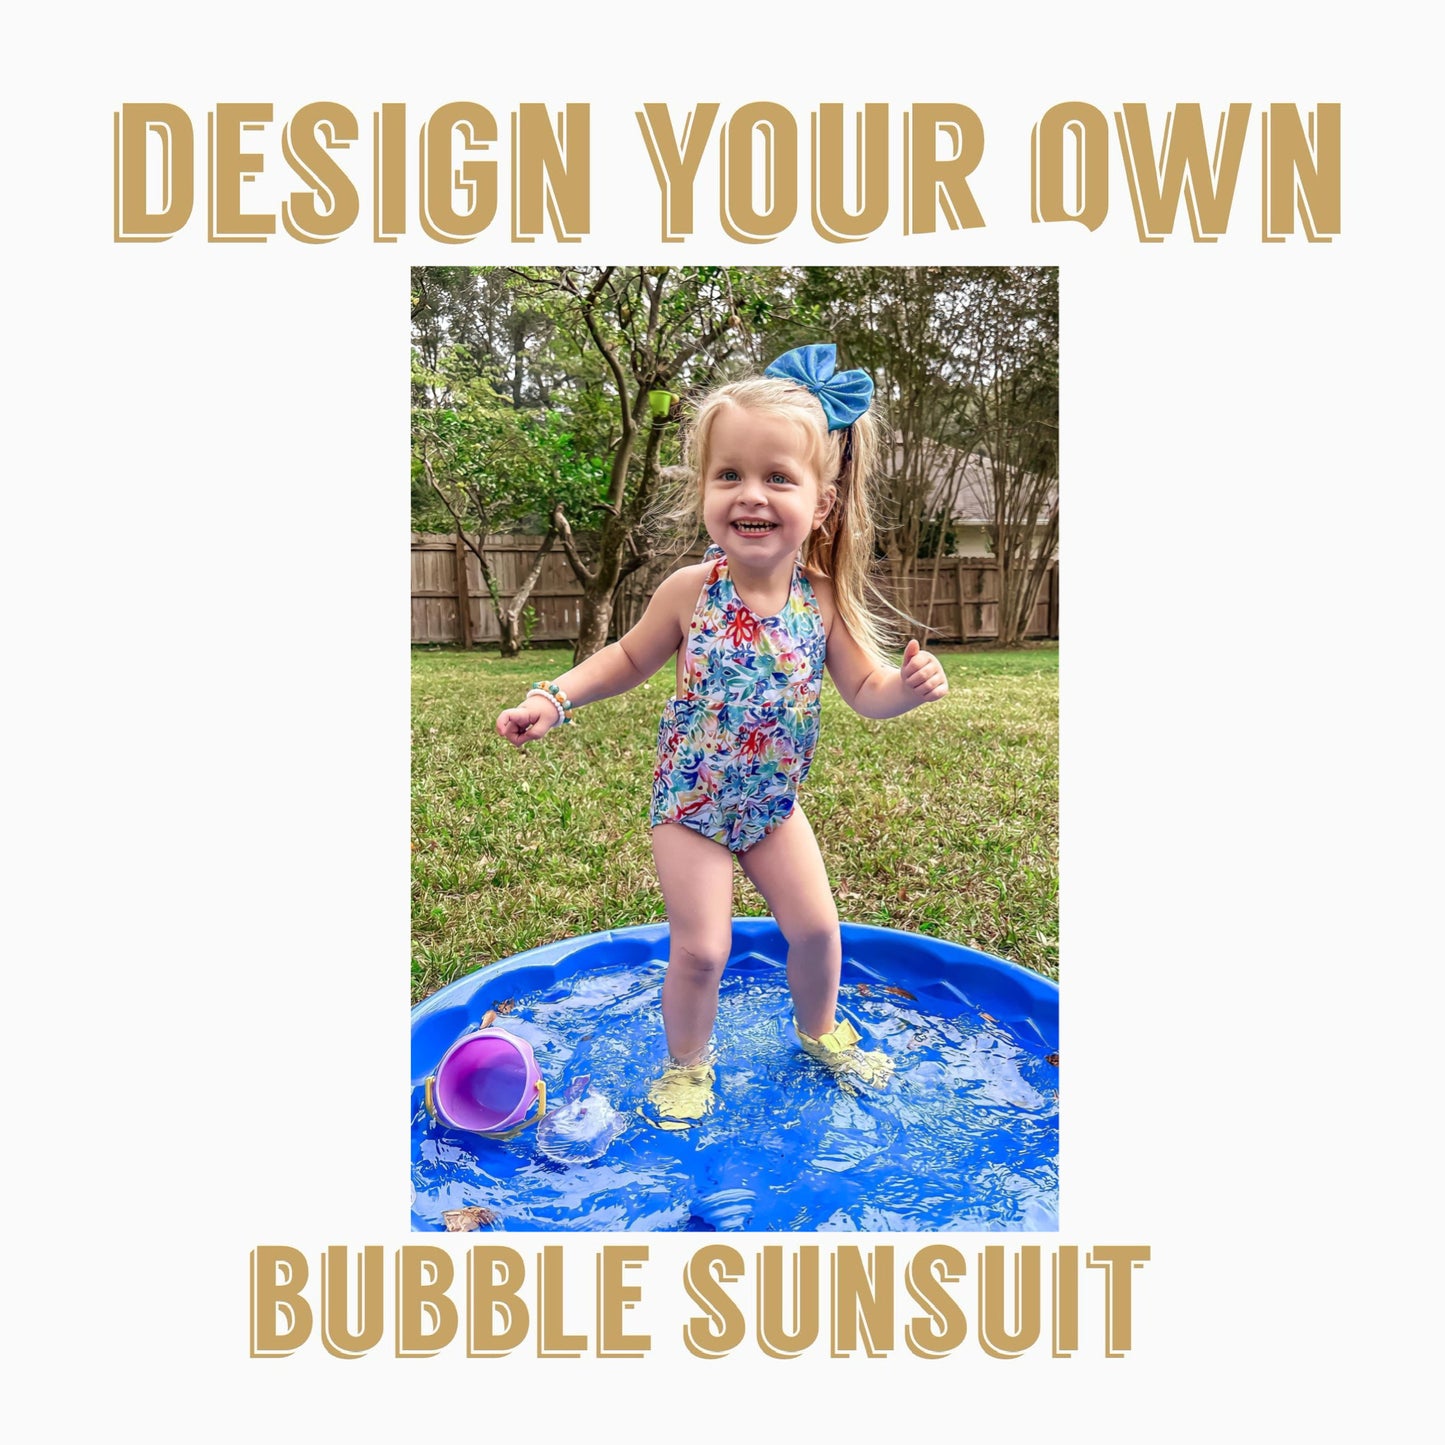 Design Your Own| BUBBLE SUNSUIT